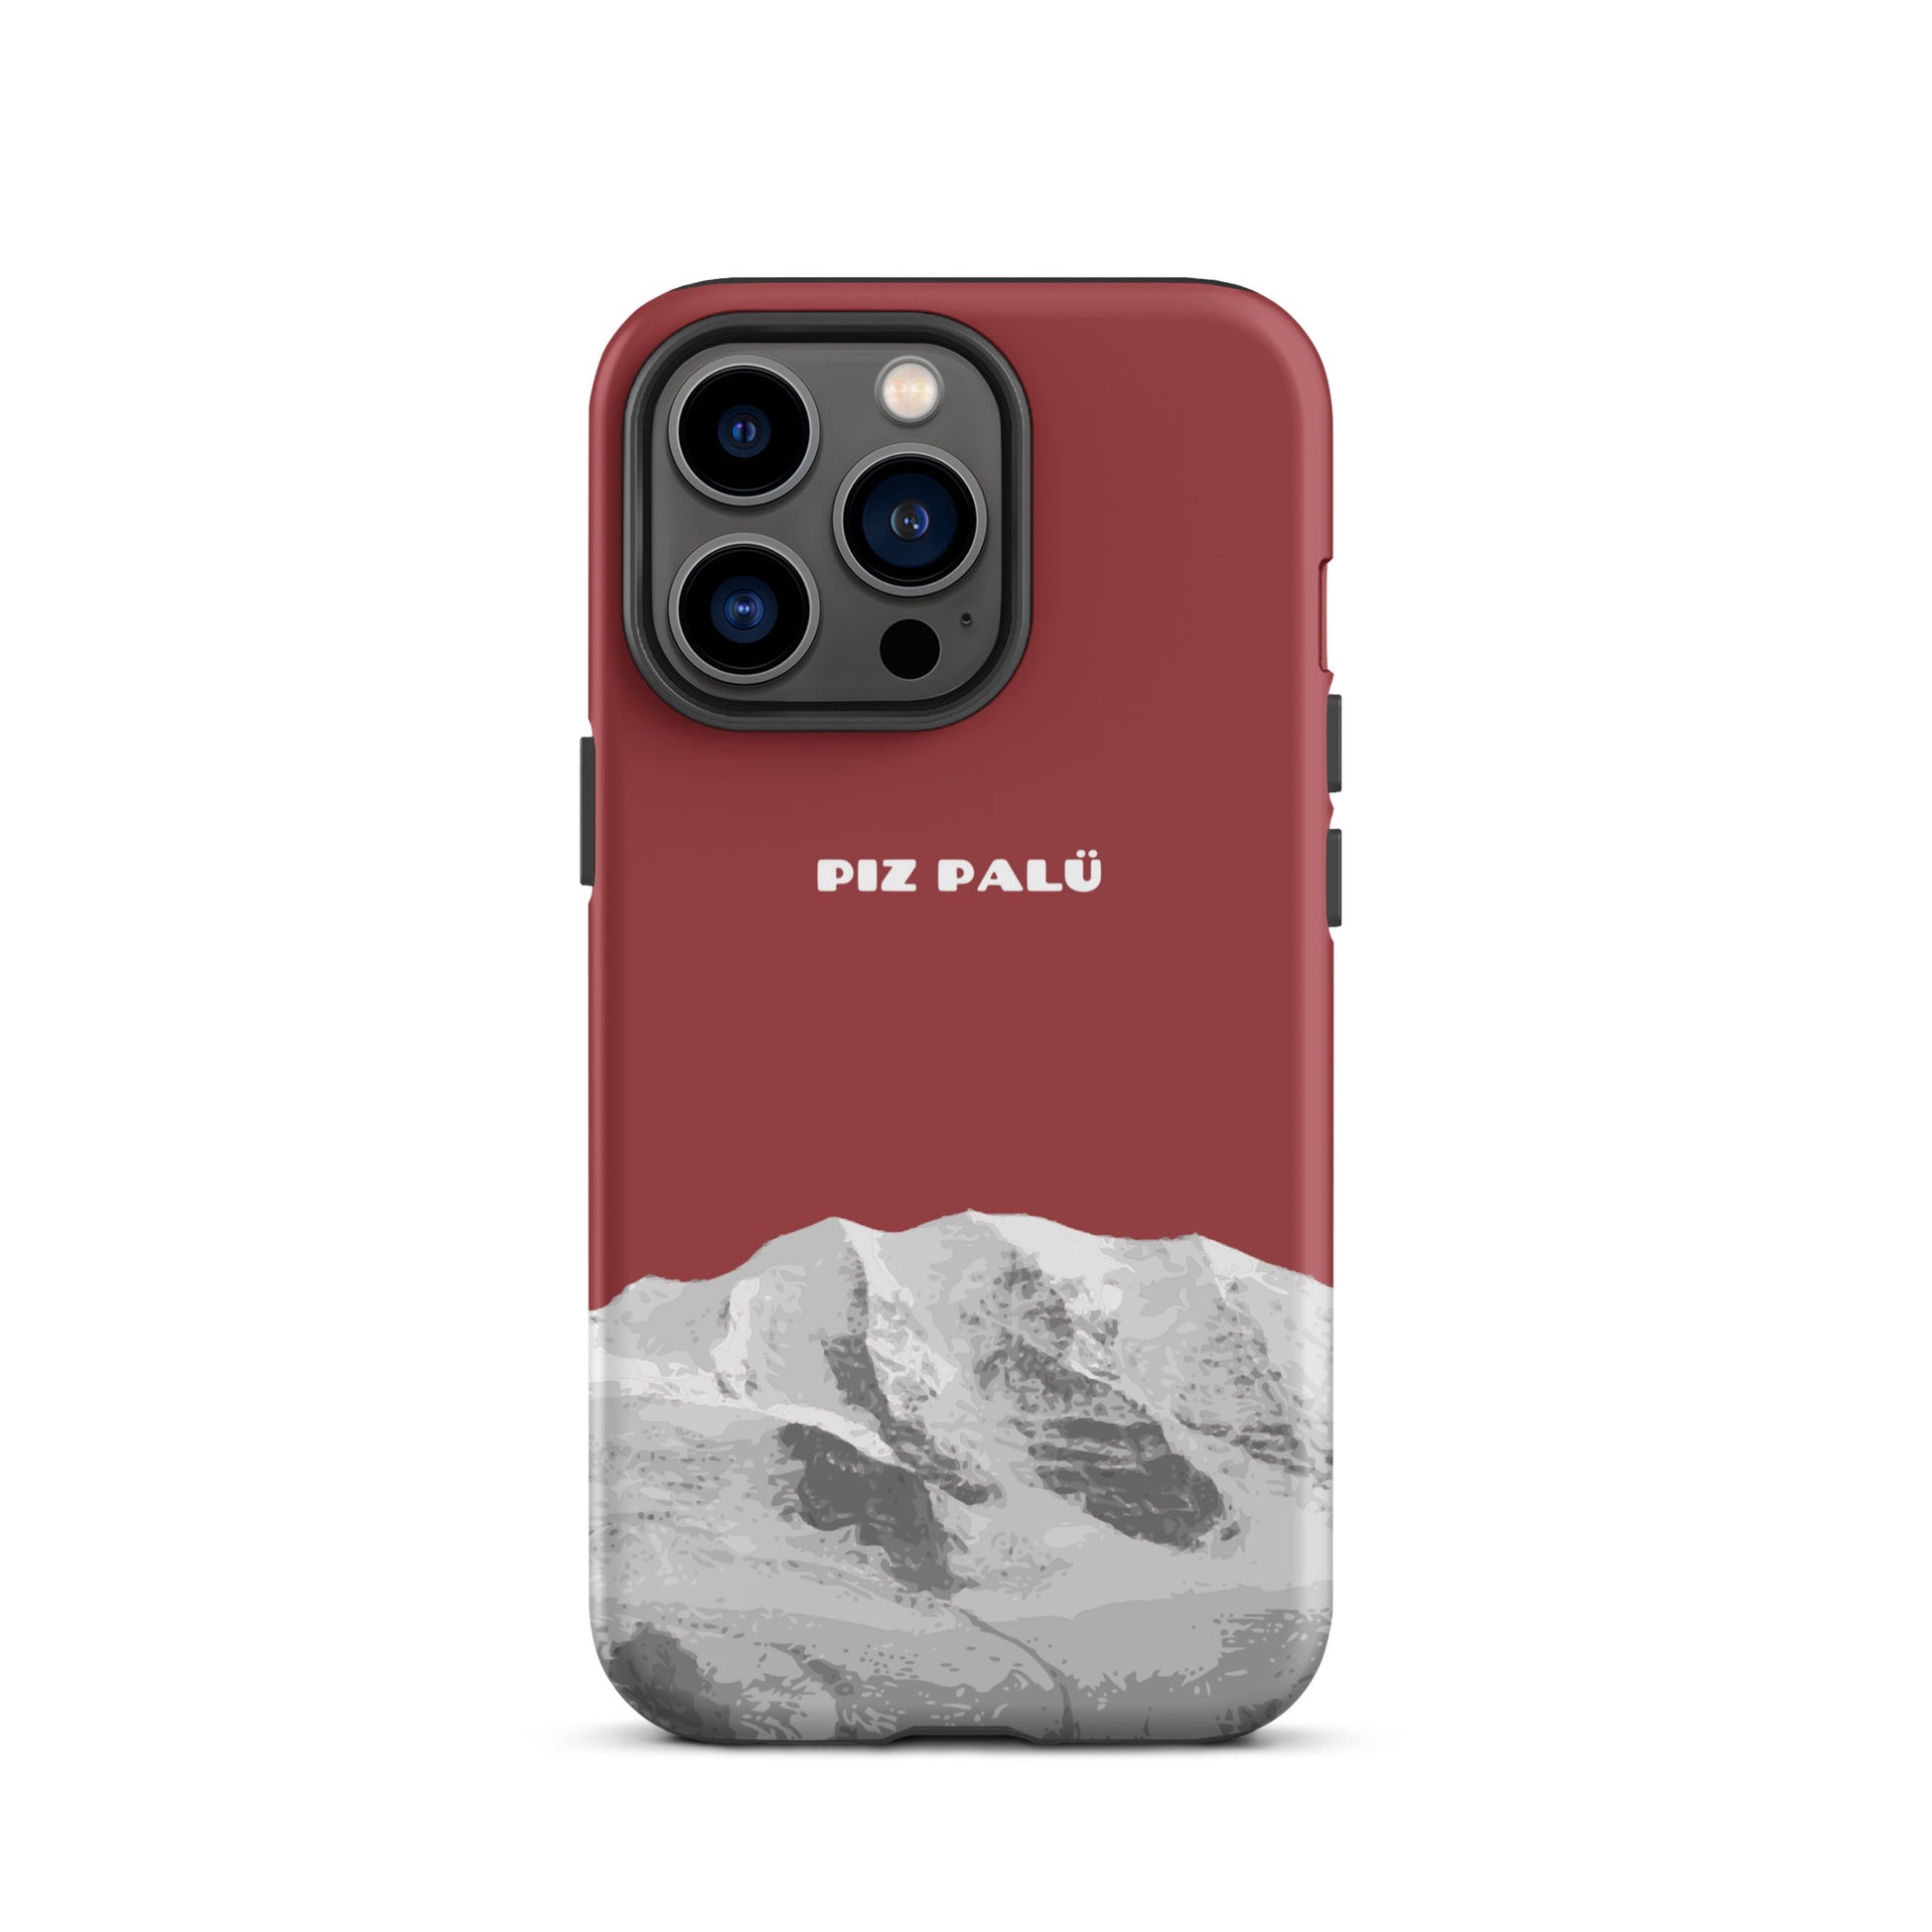 Hülle für das iPhone 13 Pro von Apple in der Farbe Pastellviolett, dass den Piz Palü in Graubünden zeigt.